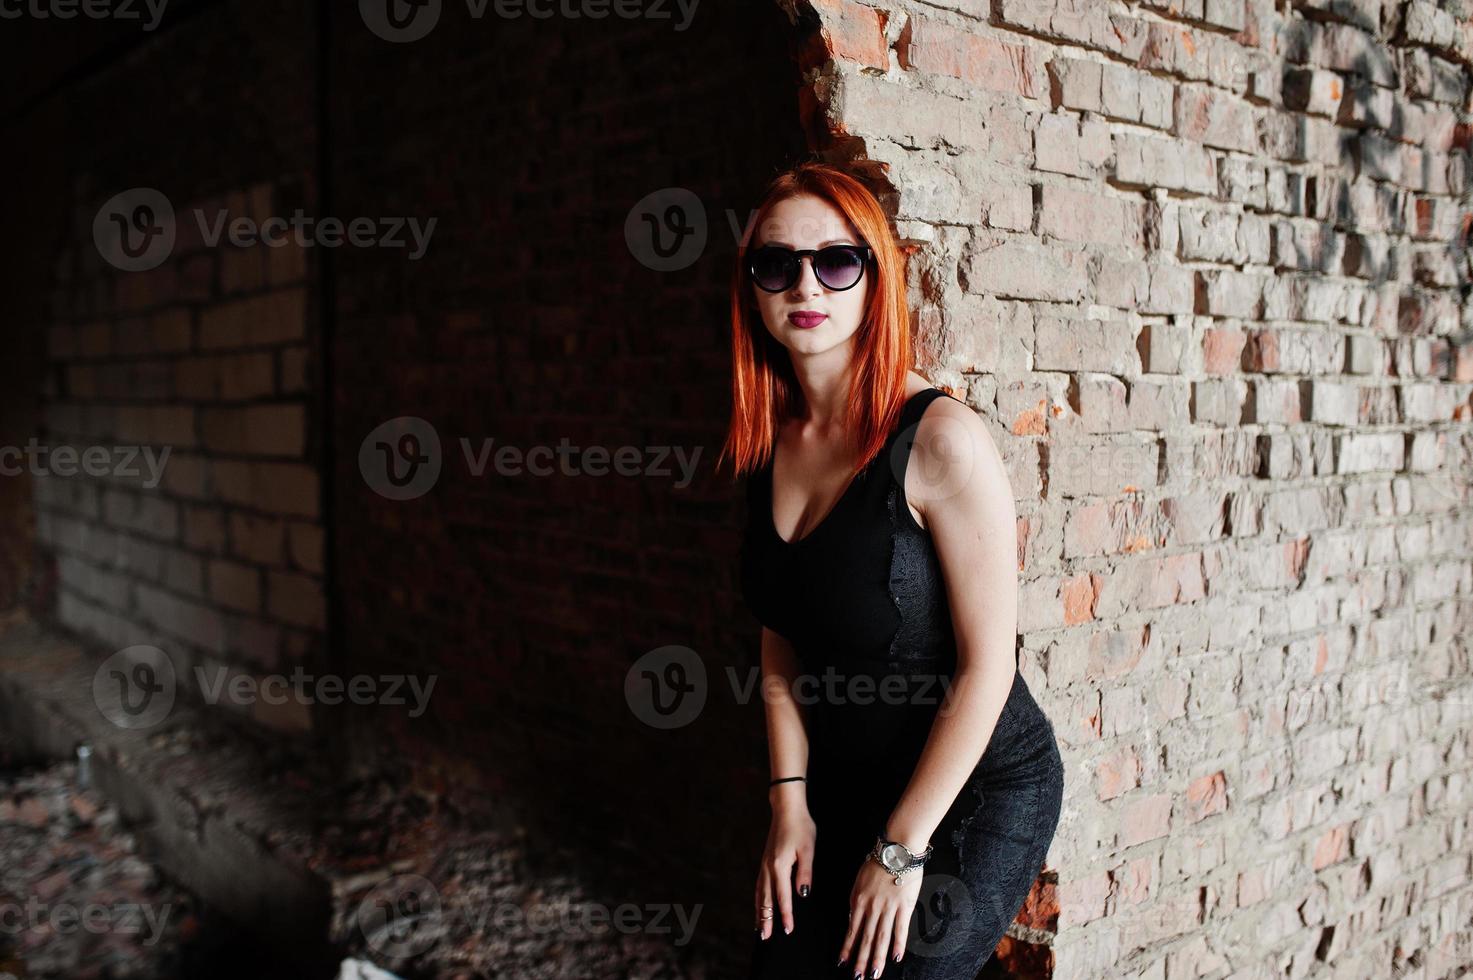 garota elegante ruiva em óculos de sol usam preto, contra um lugar abandonado com paredes de tijolo. foto